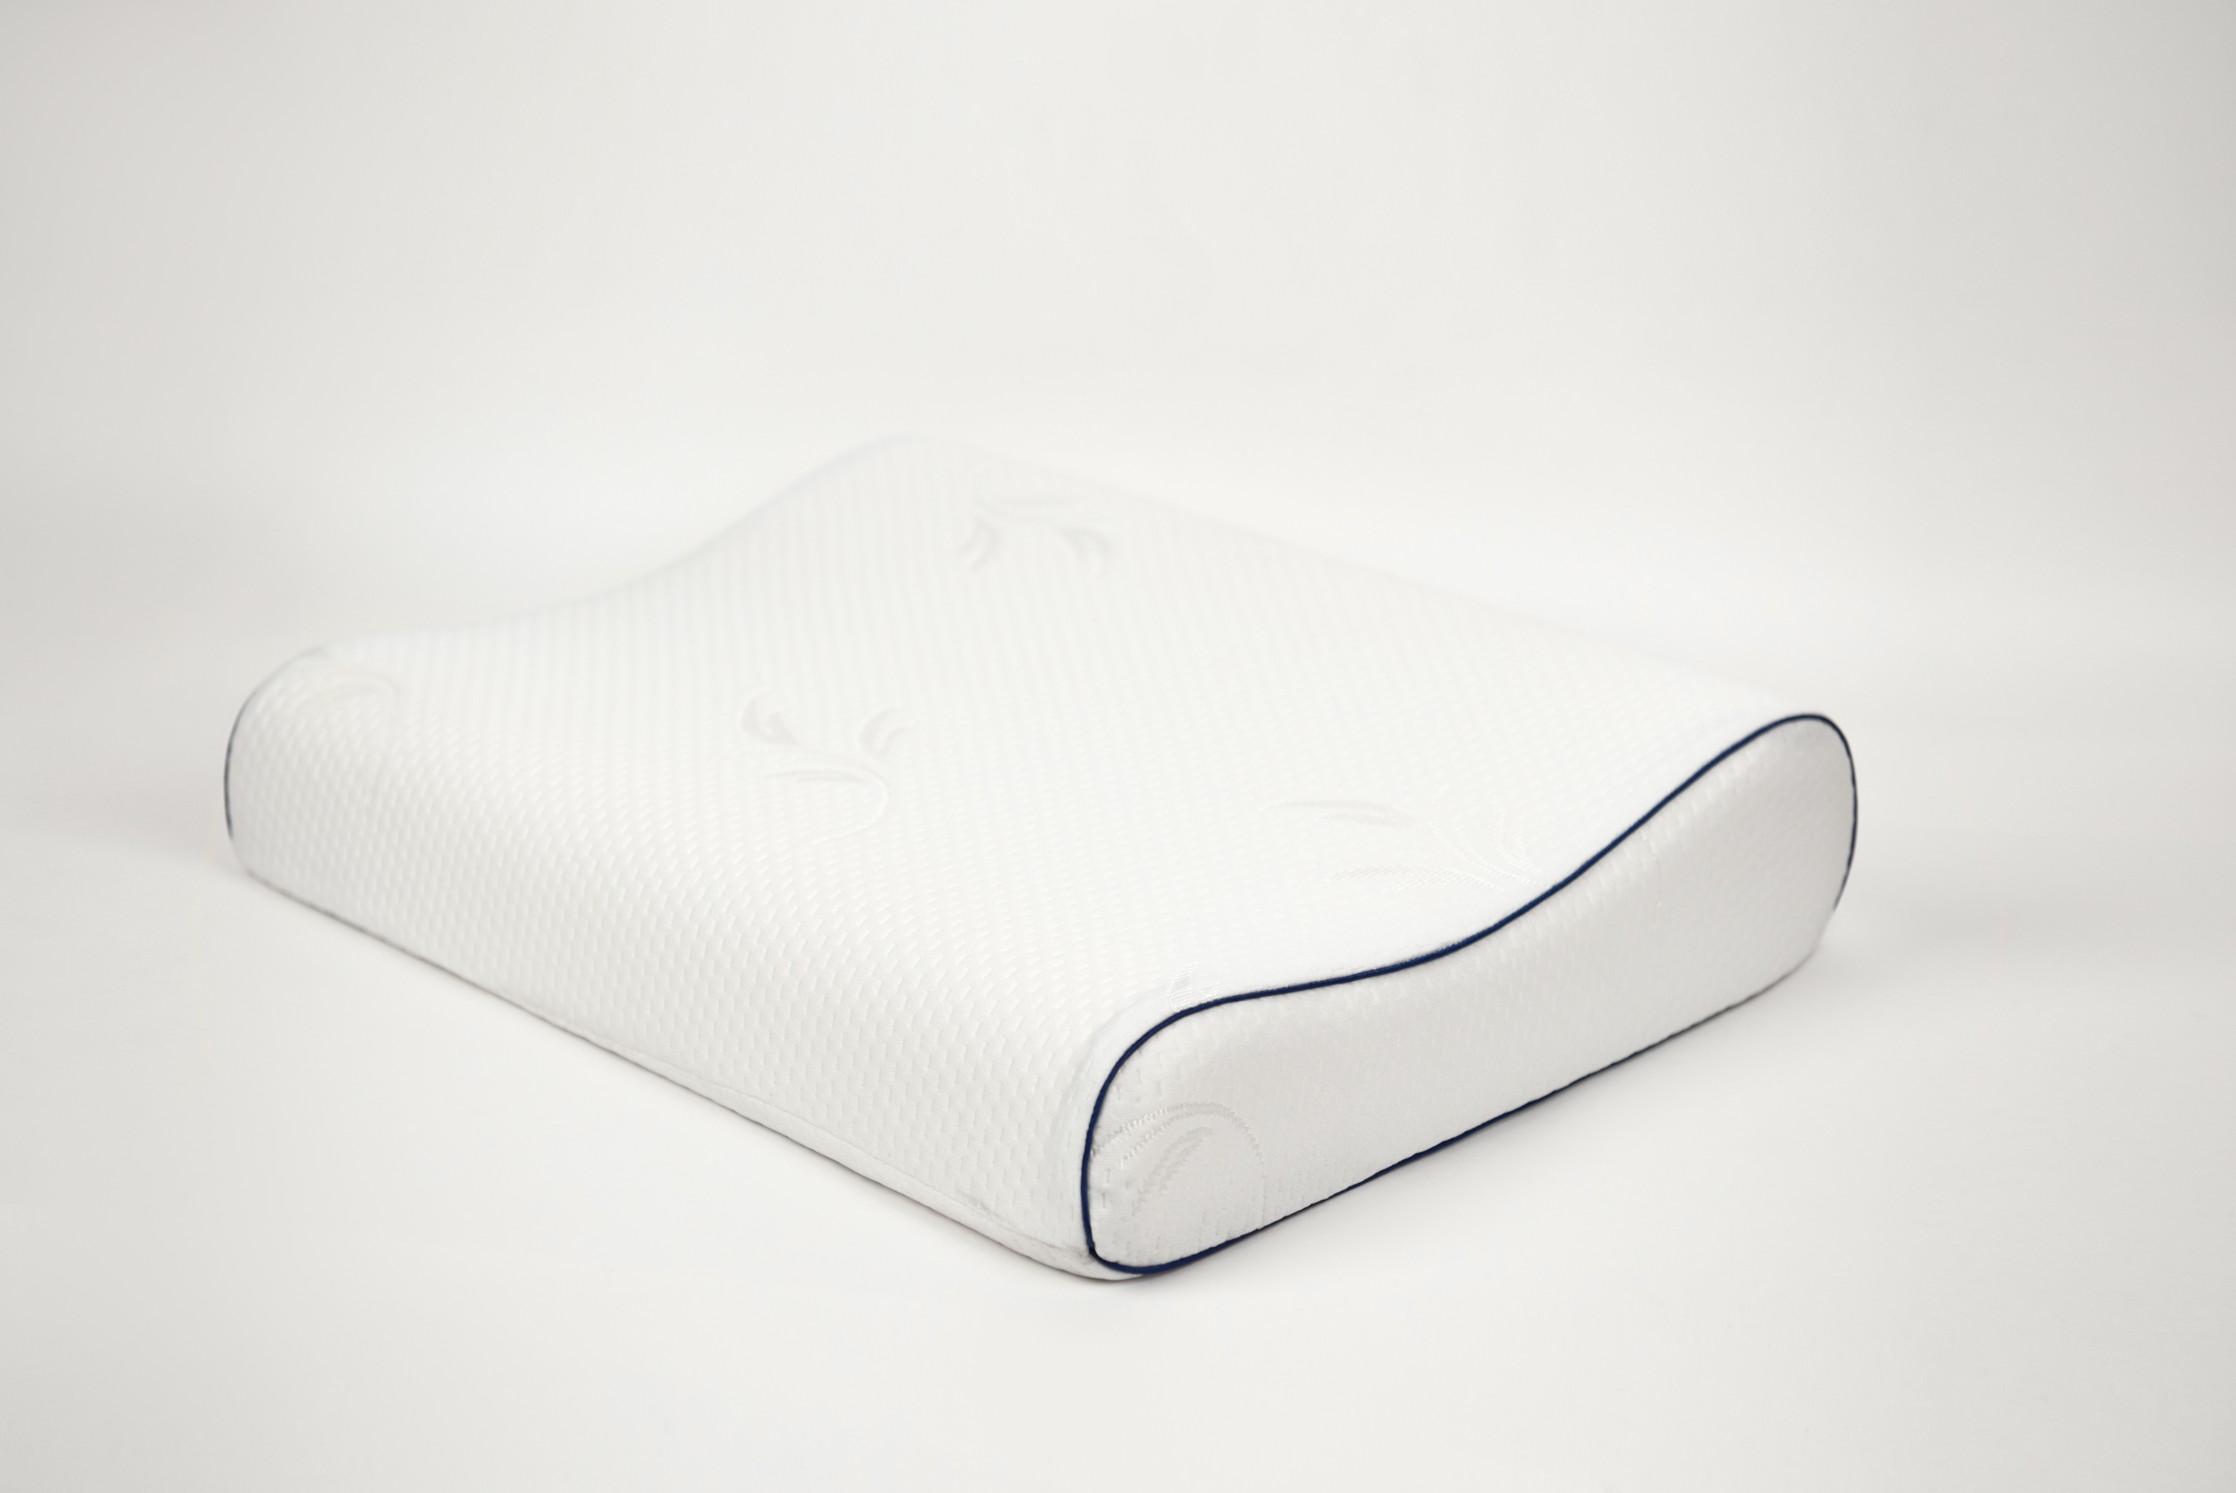 Купить Анатомическая низкая подушка от производителя “Архитектория” 